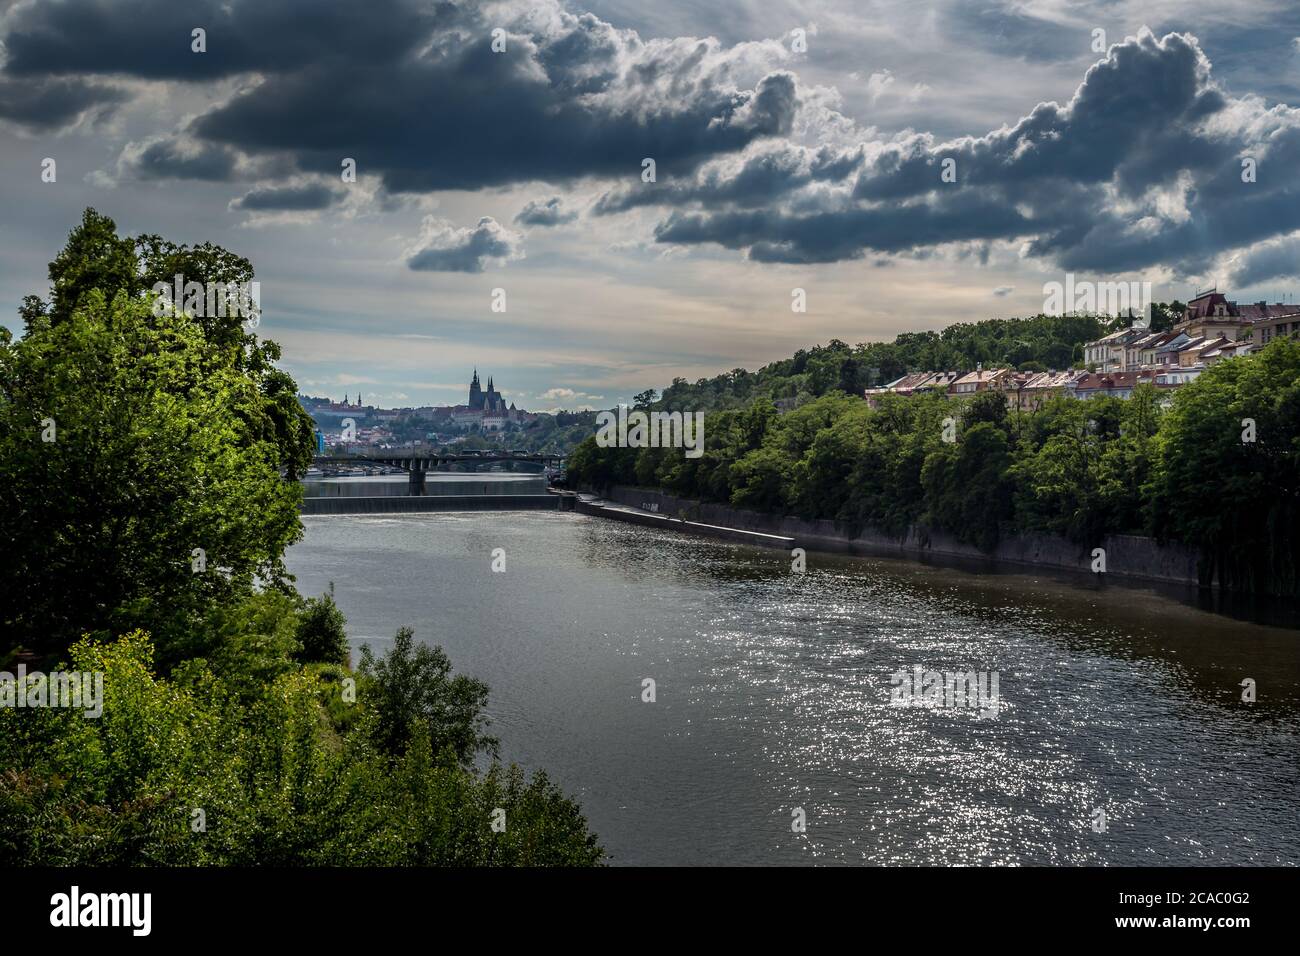 Vltava, ponts de Prague et vue sur la vieille ville de Prague, site classé au patrimoine mondial de l'UNESCO, République tchèque Banque D'Images